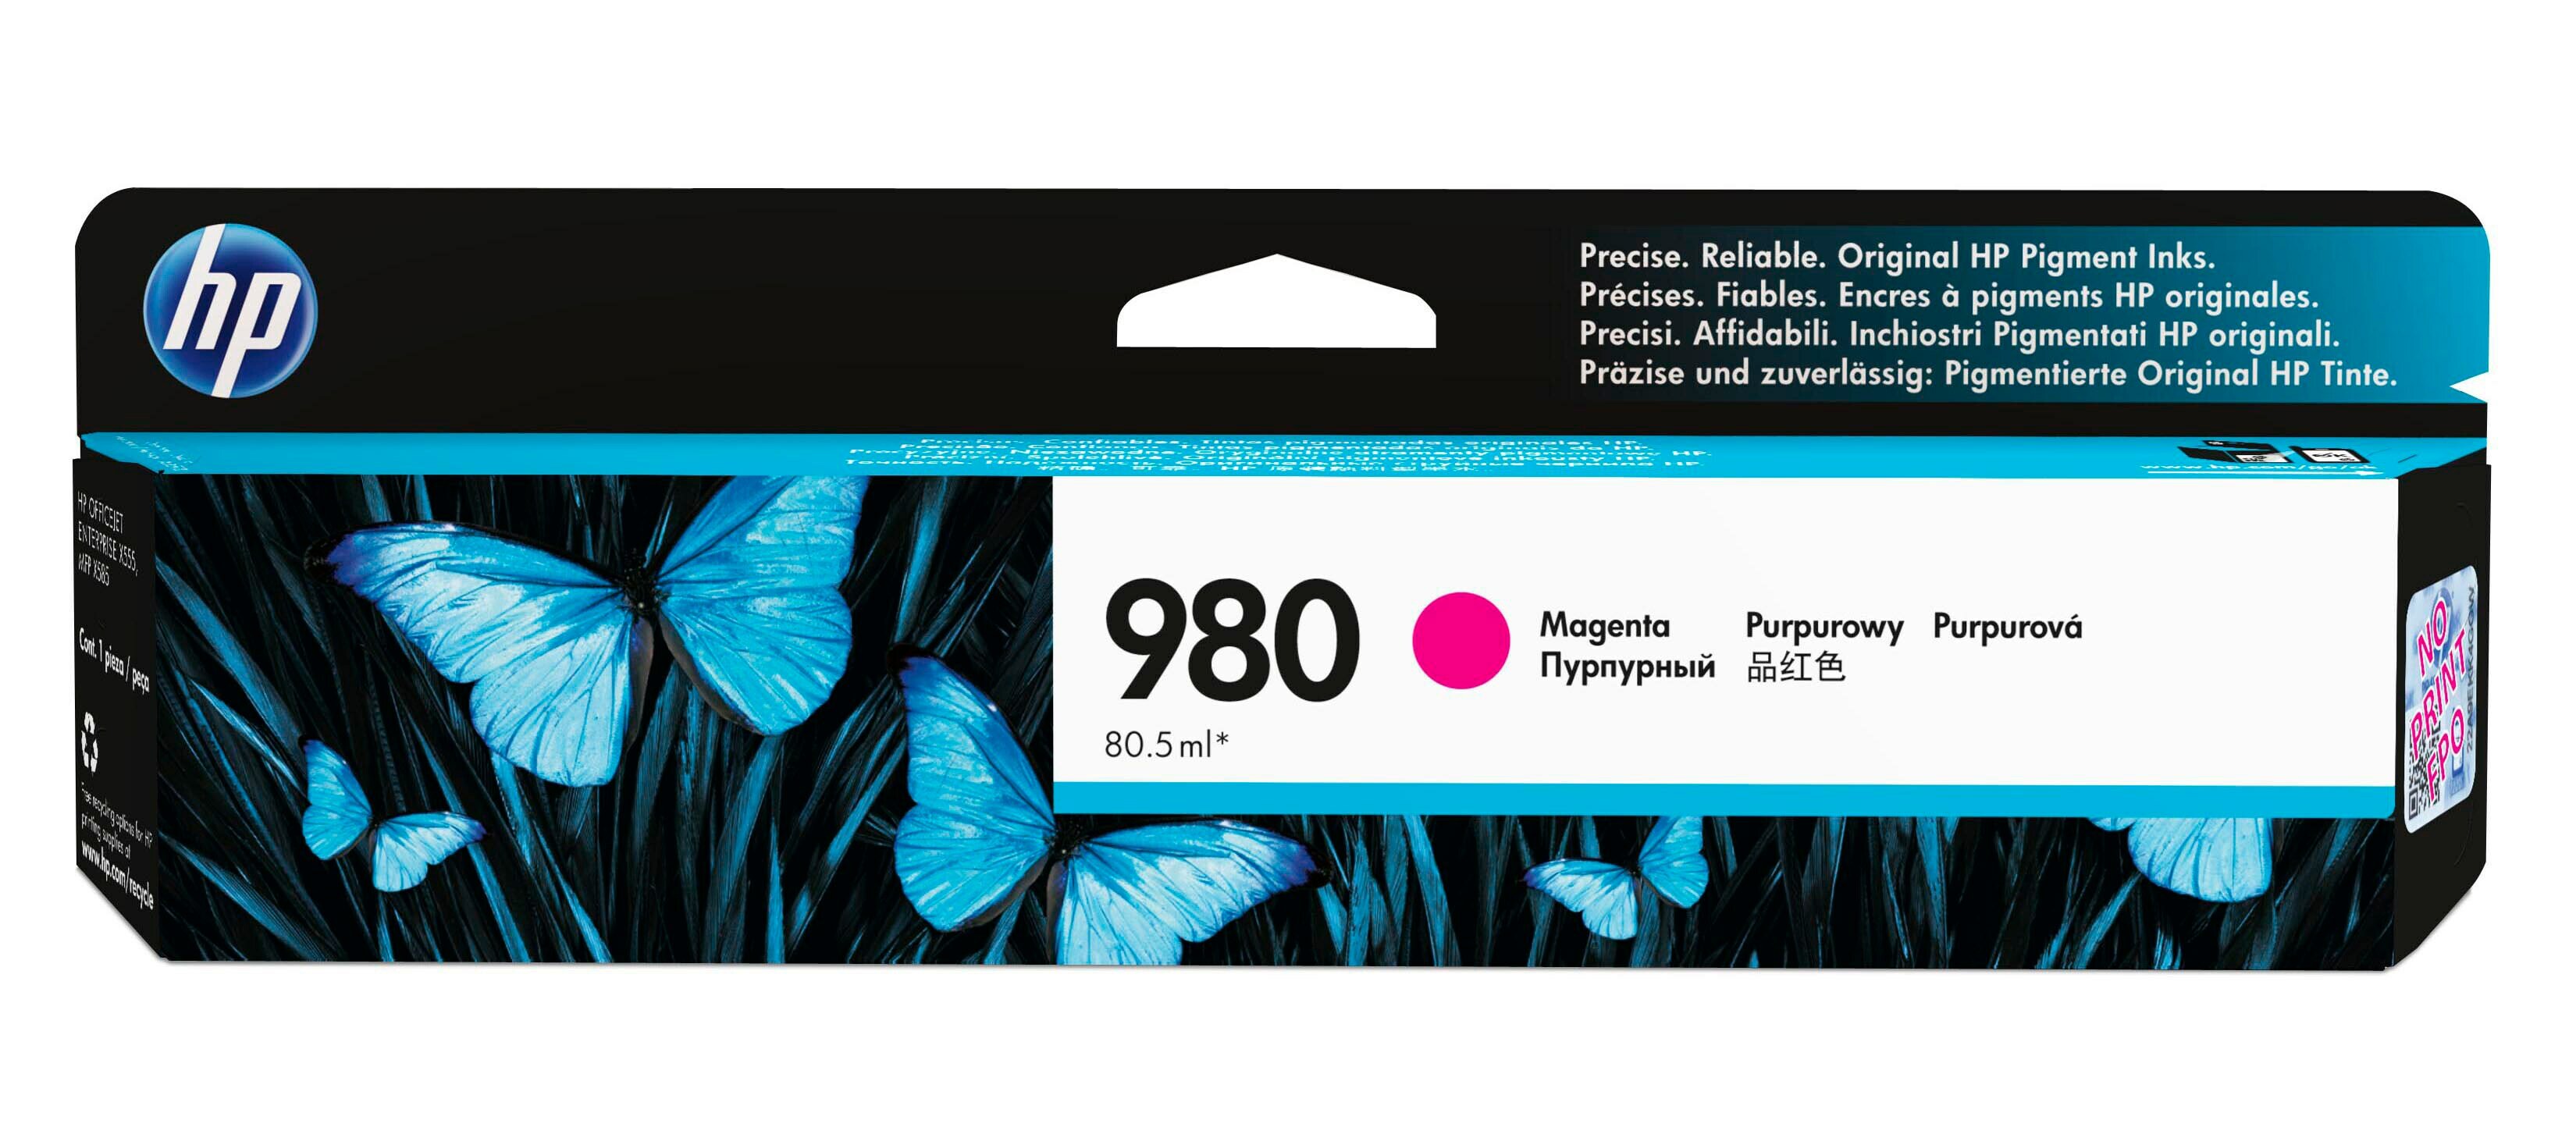 Картридж для печати HP Картридж HP 980 D8J08A вид печати струйный, цвет Пурпурный, емкость 81мл.